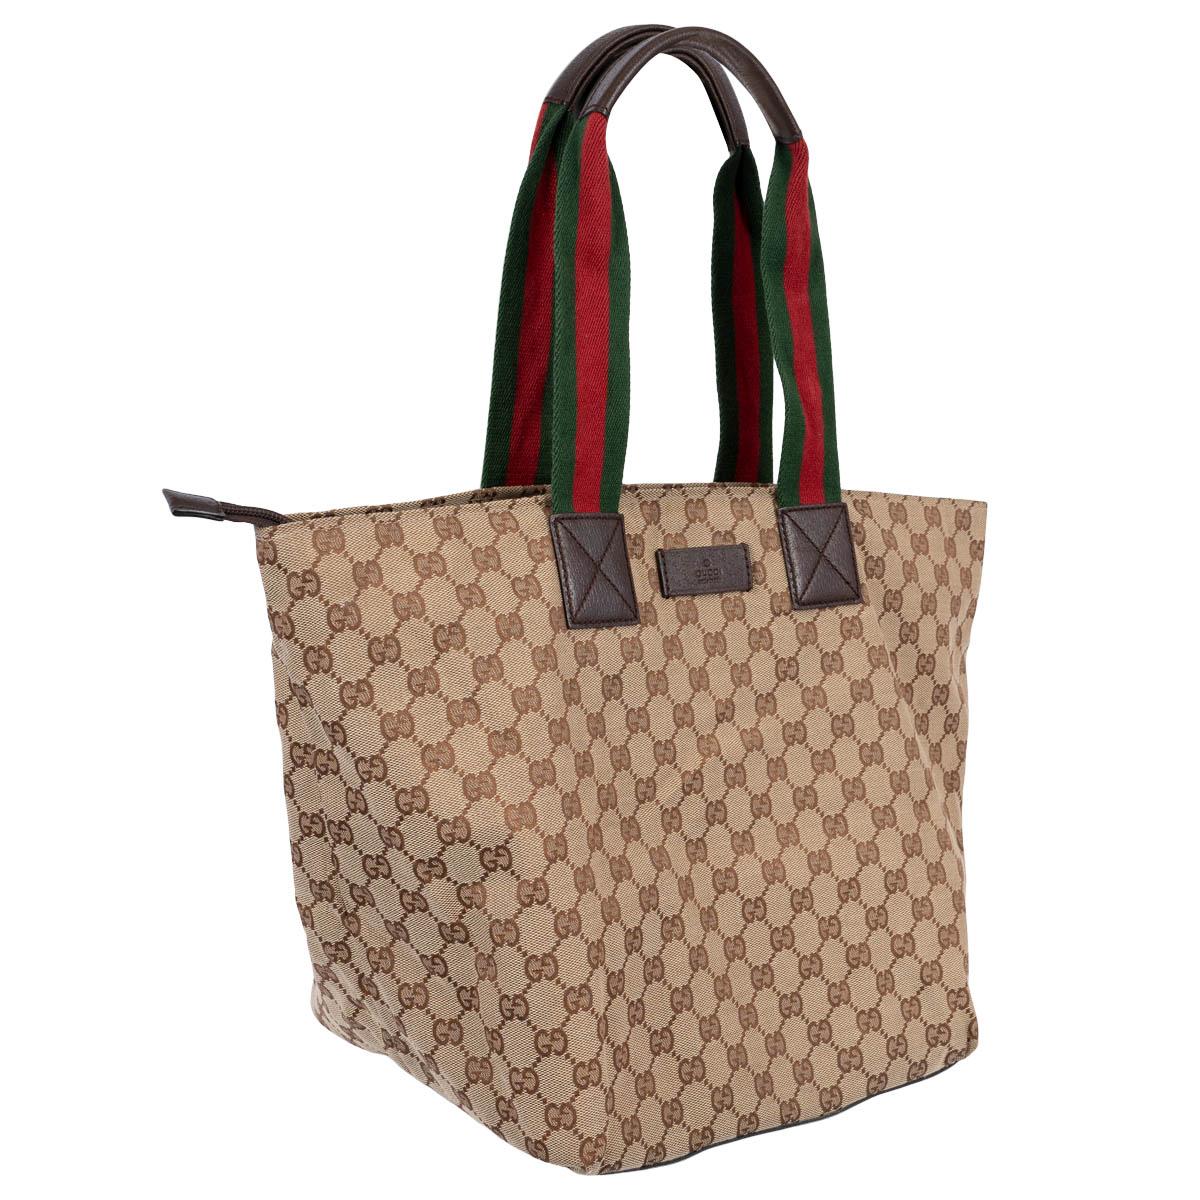 100% authentische Gucci Medium Web Tote Bag aus beigem und braunem GG Monogram Canvas mit charakteristischem Web-Streifen in Grün und Rot und dunkelbraunem Lederbesatz. Lässt sich oben mit einem Reißverschluss öffnen und ist mit dunkelbraunem